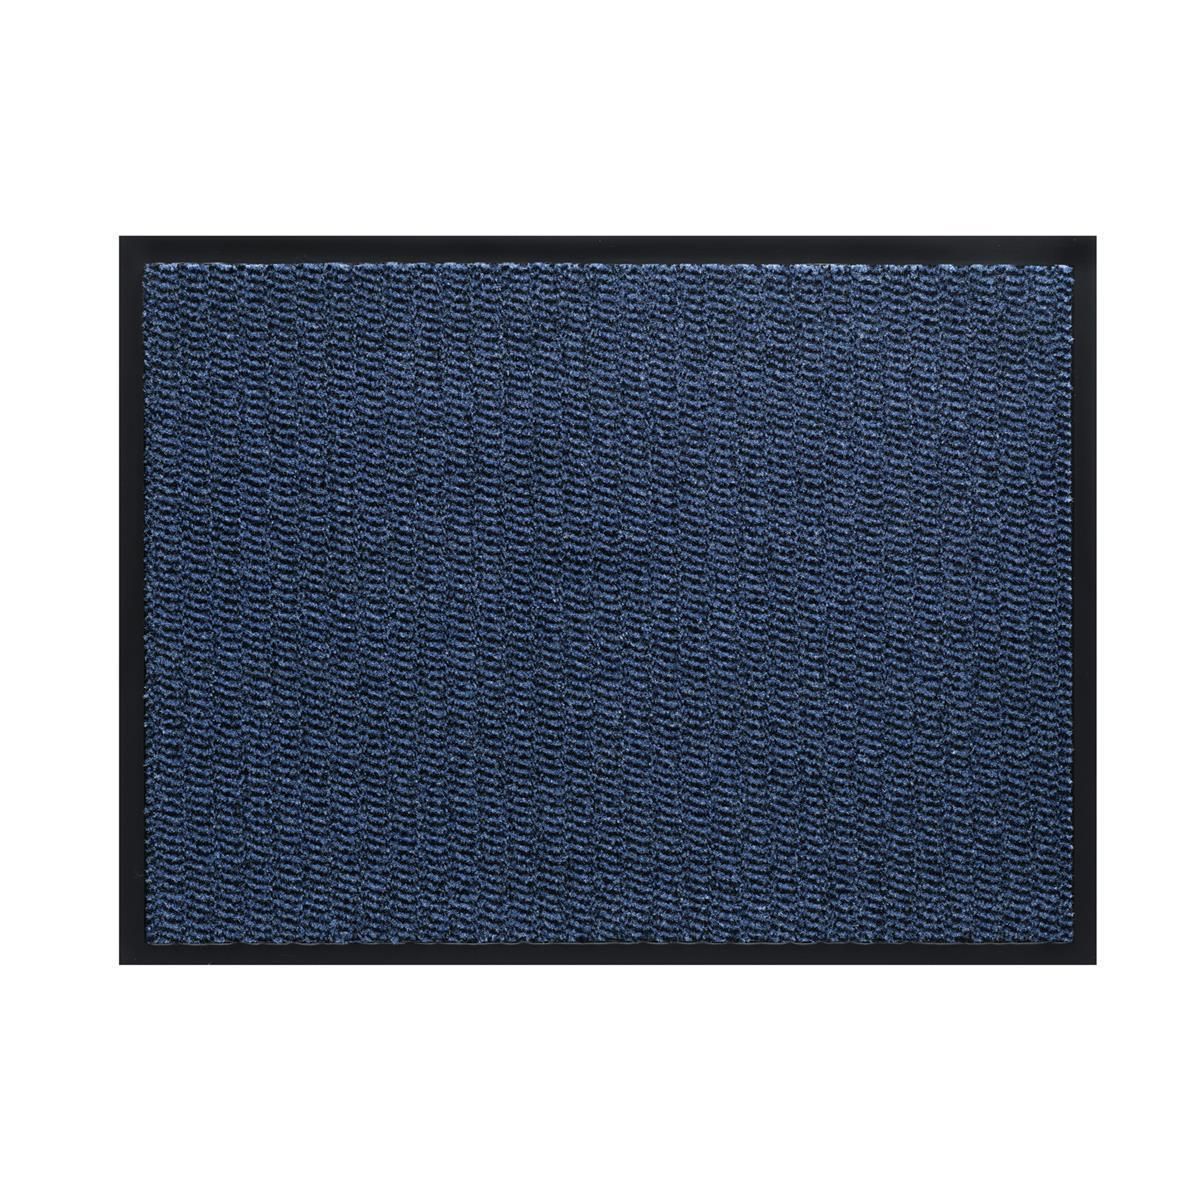 Sauberlauf Innen Spectrum 010 blue - Rollenbreite 90 cm